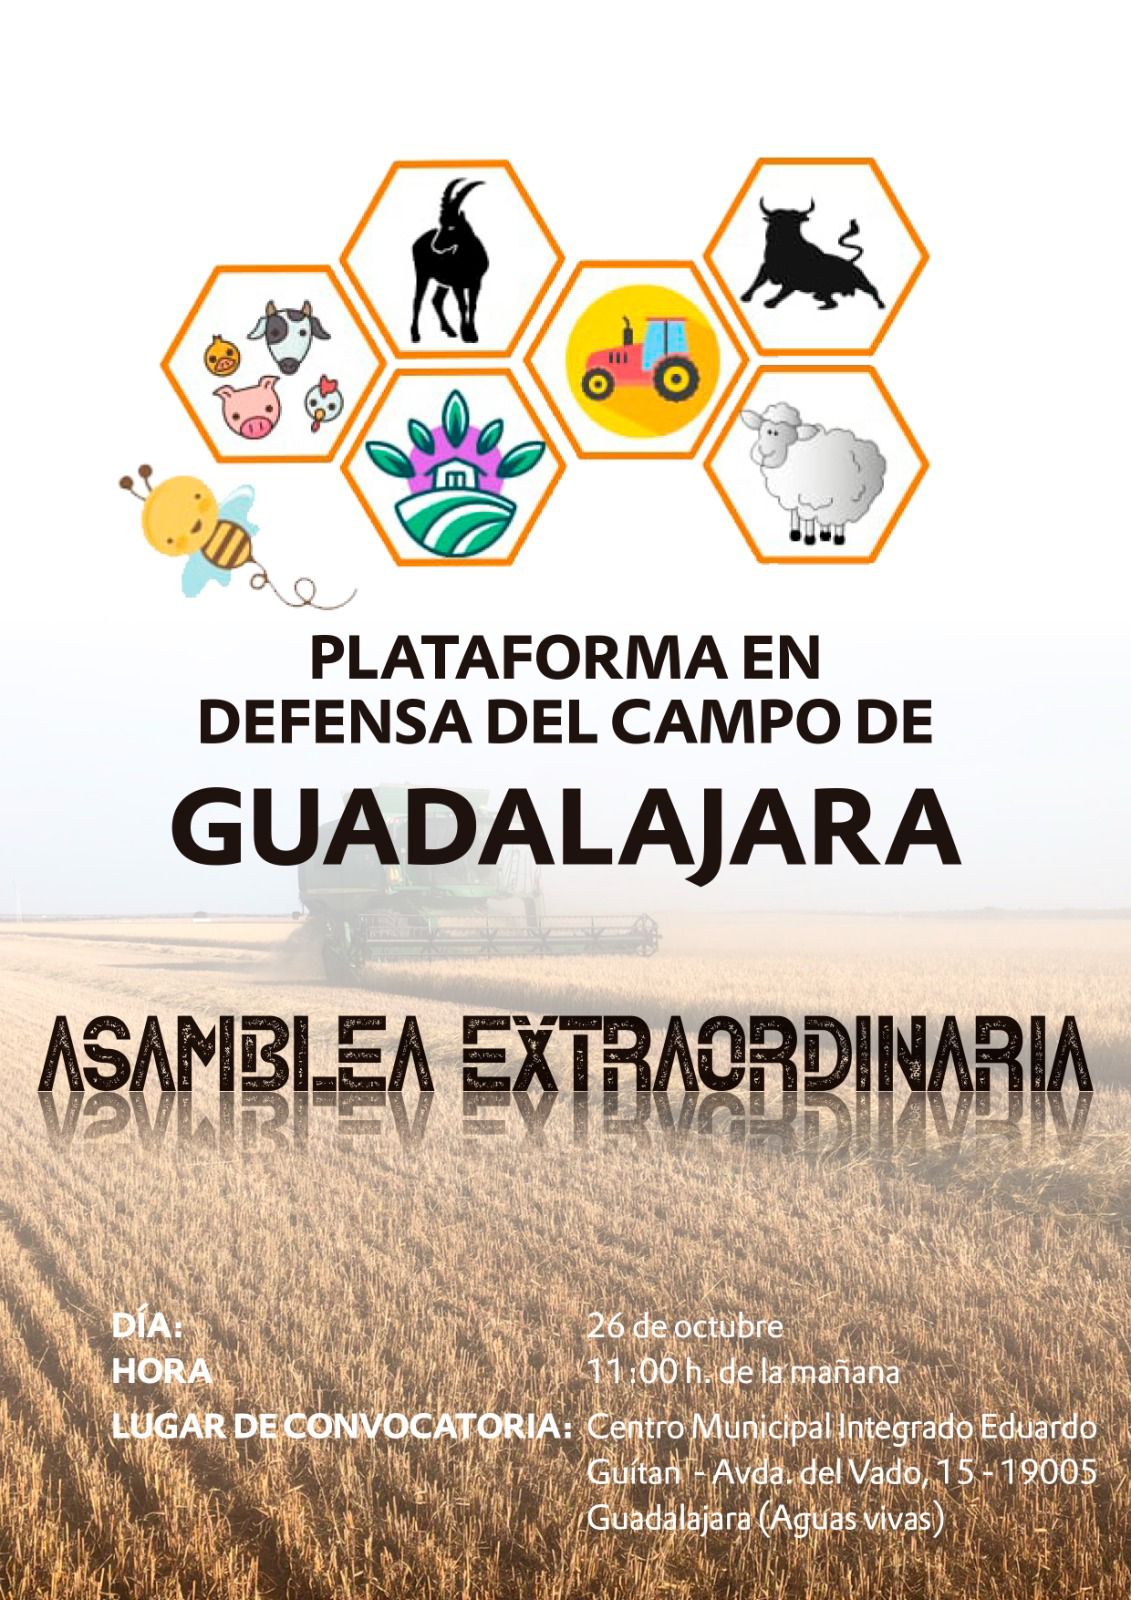 Unidos en Defensa del Campo: La Plataforma de Guadalajara se Convierte en Asociación